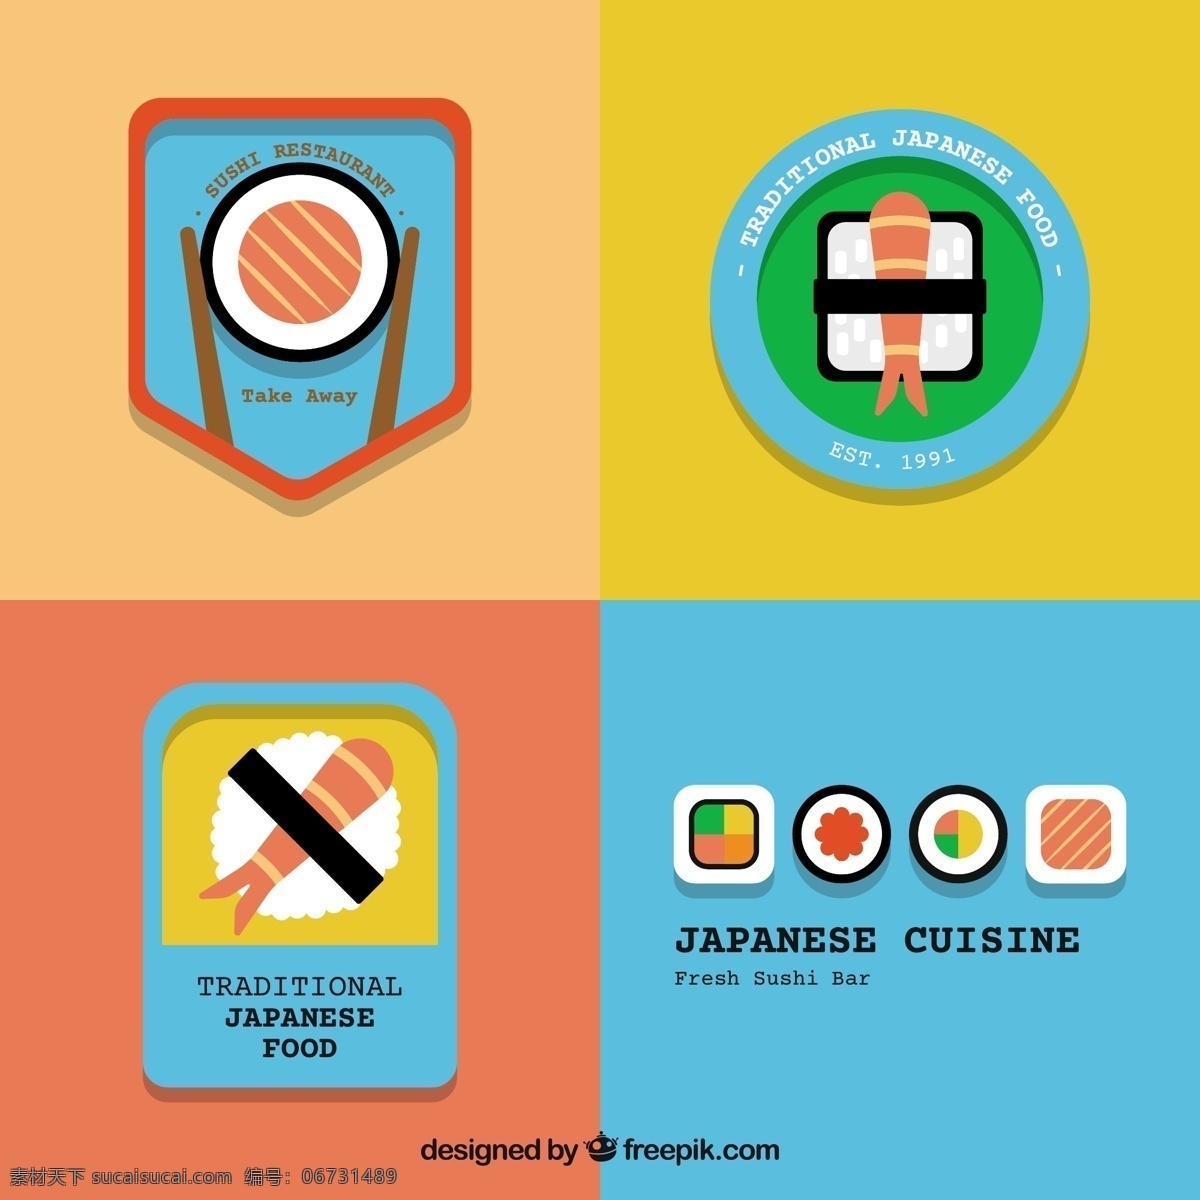 平面设计 中 传统 日本 食品 标志 商业 徽章 单位 企业 寿司 公司 品牌 元素 企业标识 食品标志 符号 身份